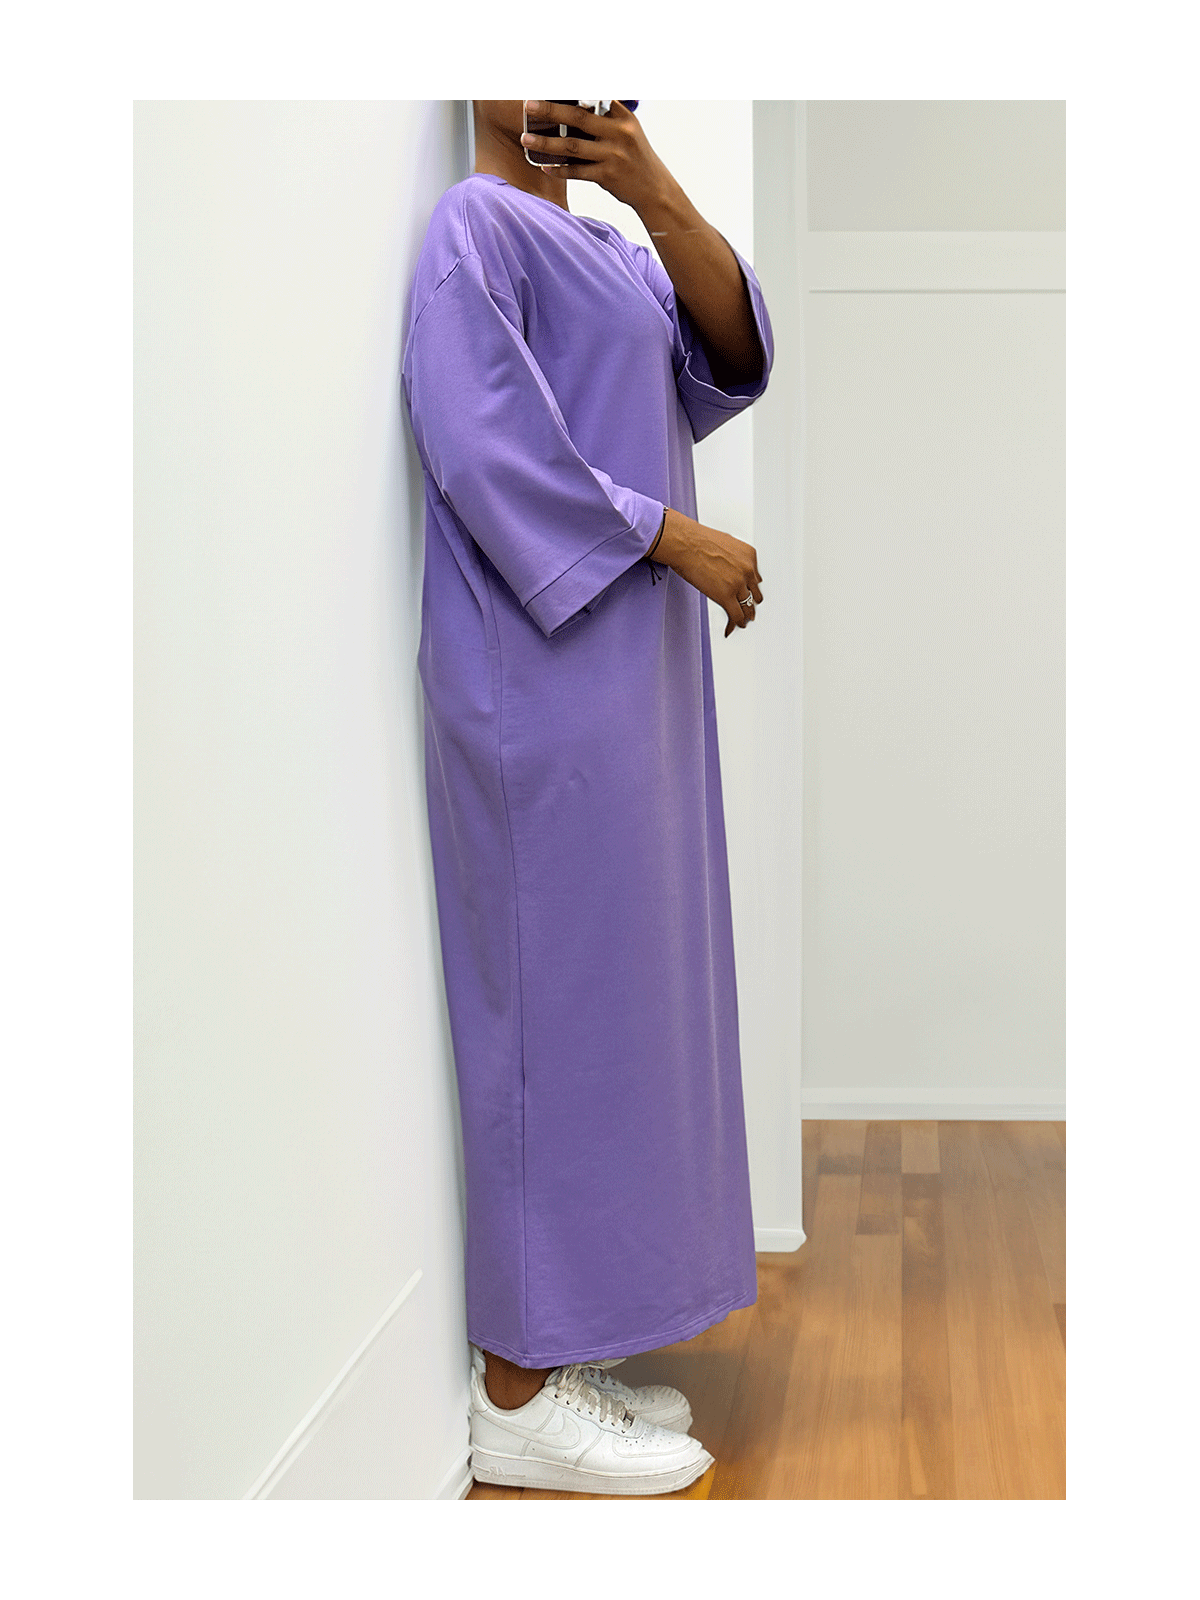 Longue robe over size en coton lilas très épais - 2